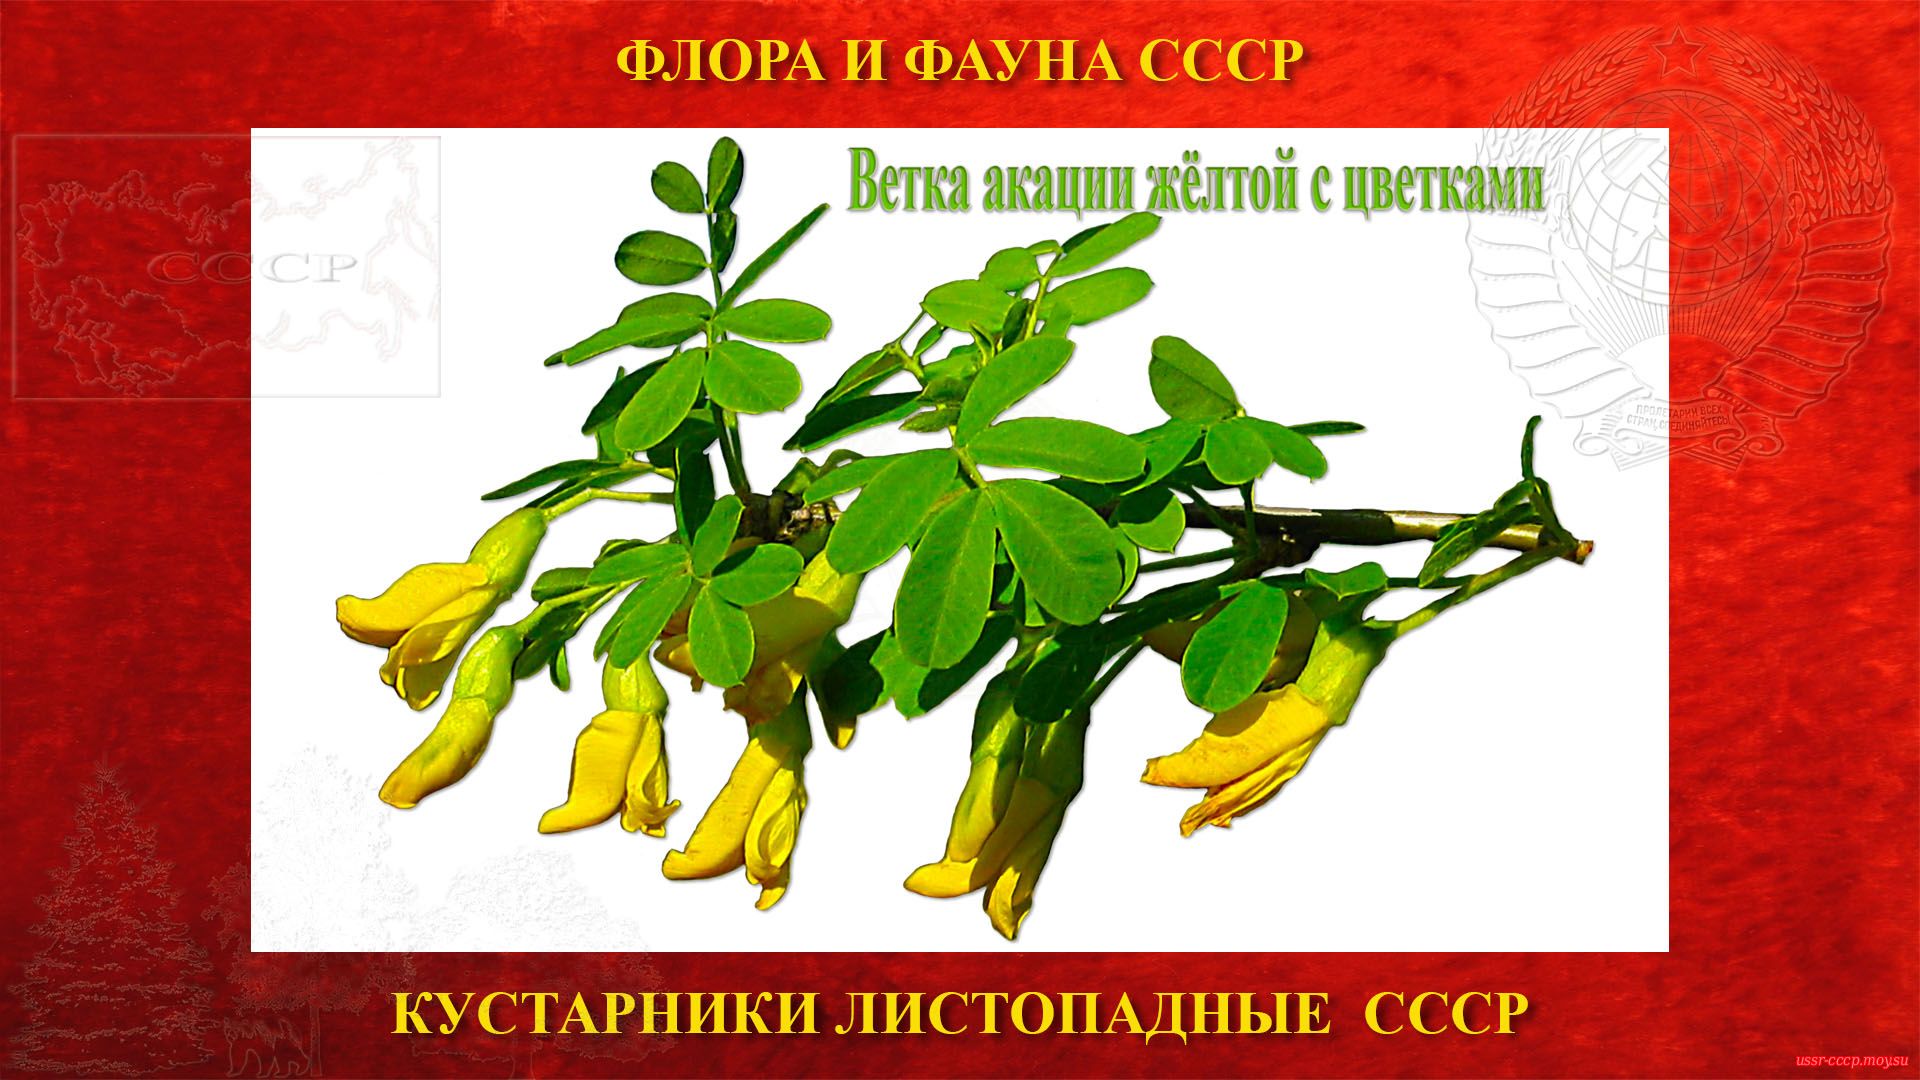 Ветка акации жёлтой с цветками СССР